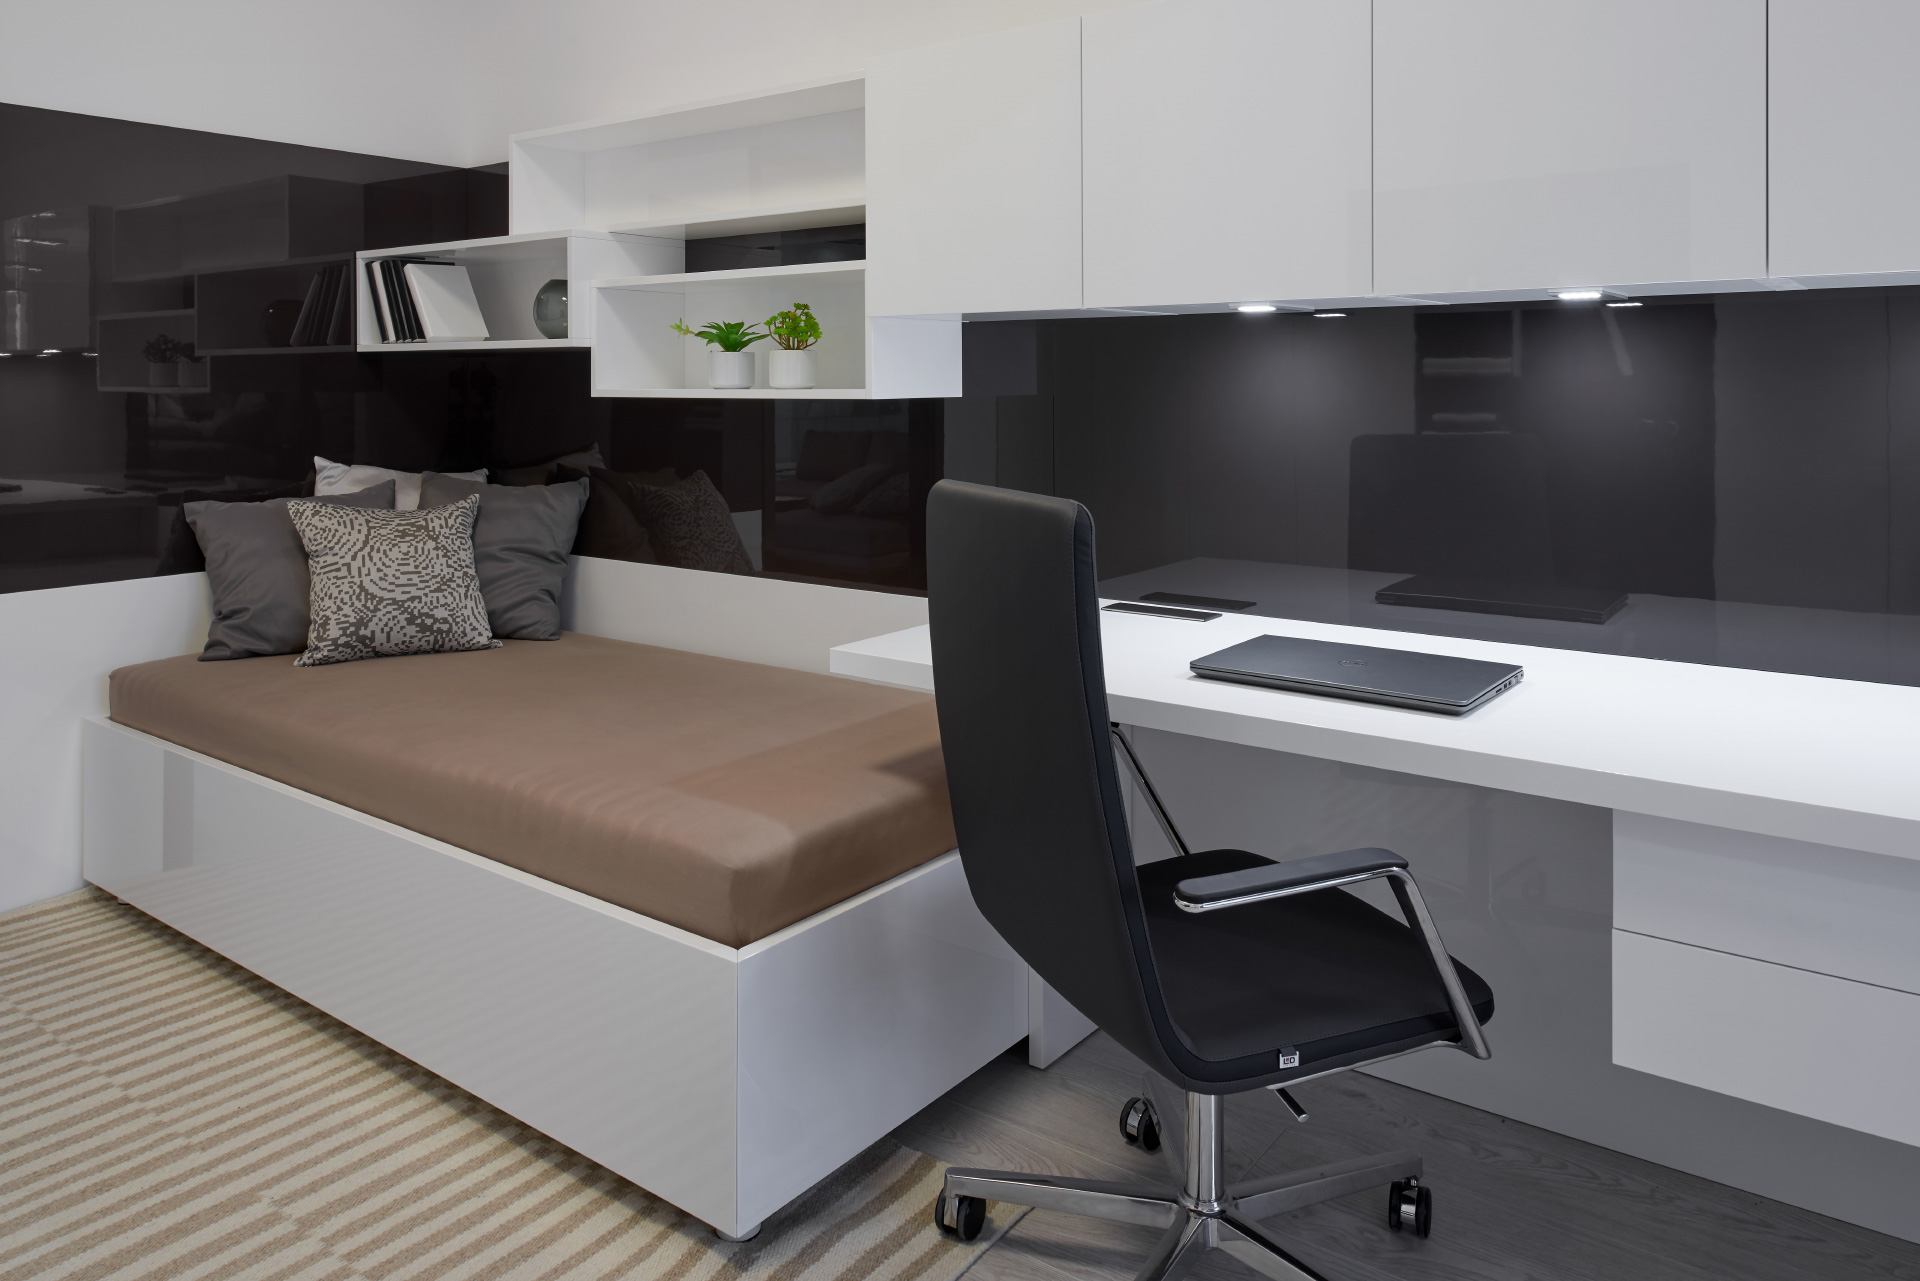 Hanák nábytek Minimalist student room